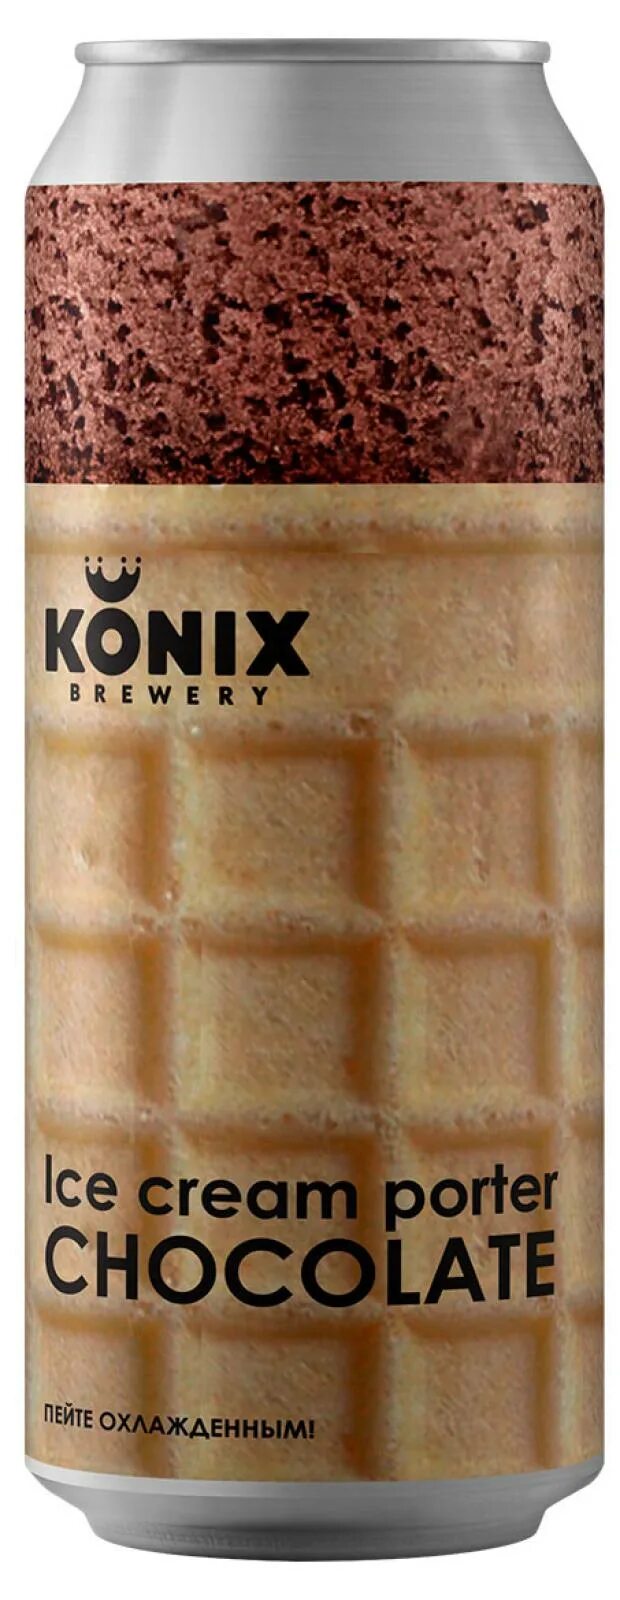 Konix Ice Cream Porter Chocolate. Пиво Коникс шоколад. Пиво Konix Ice Cream Porter. Коникс Портер мороженое шоколад.